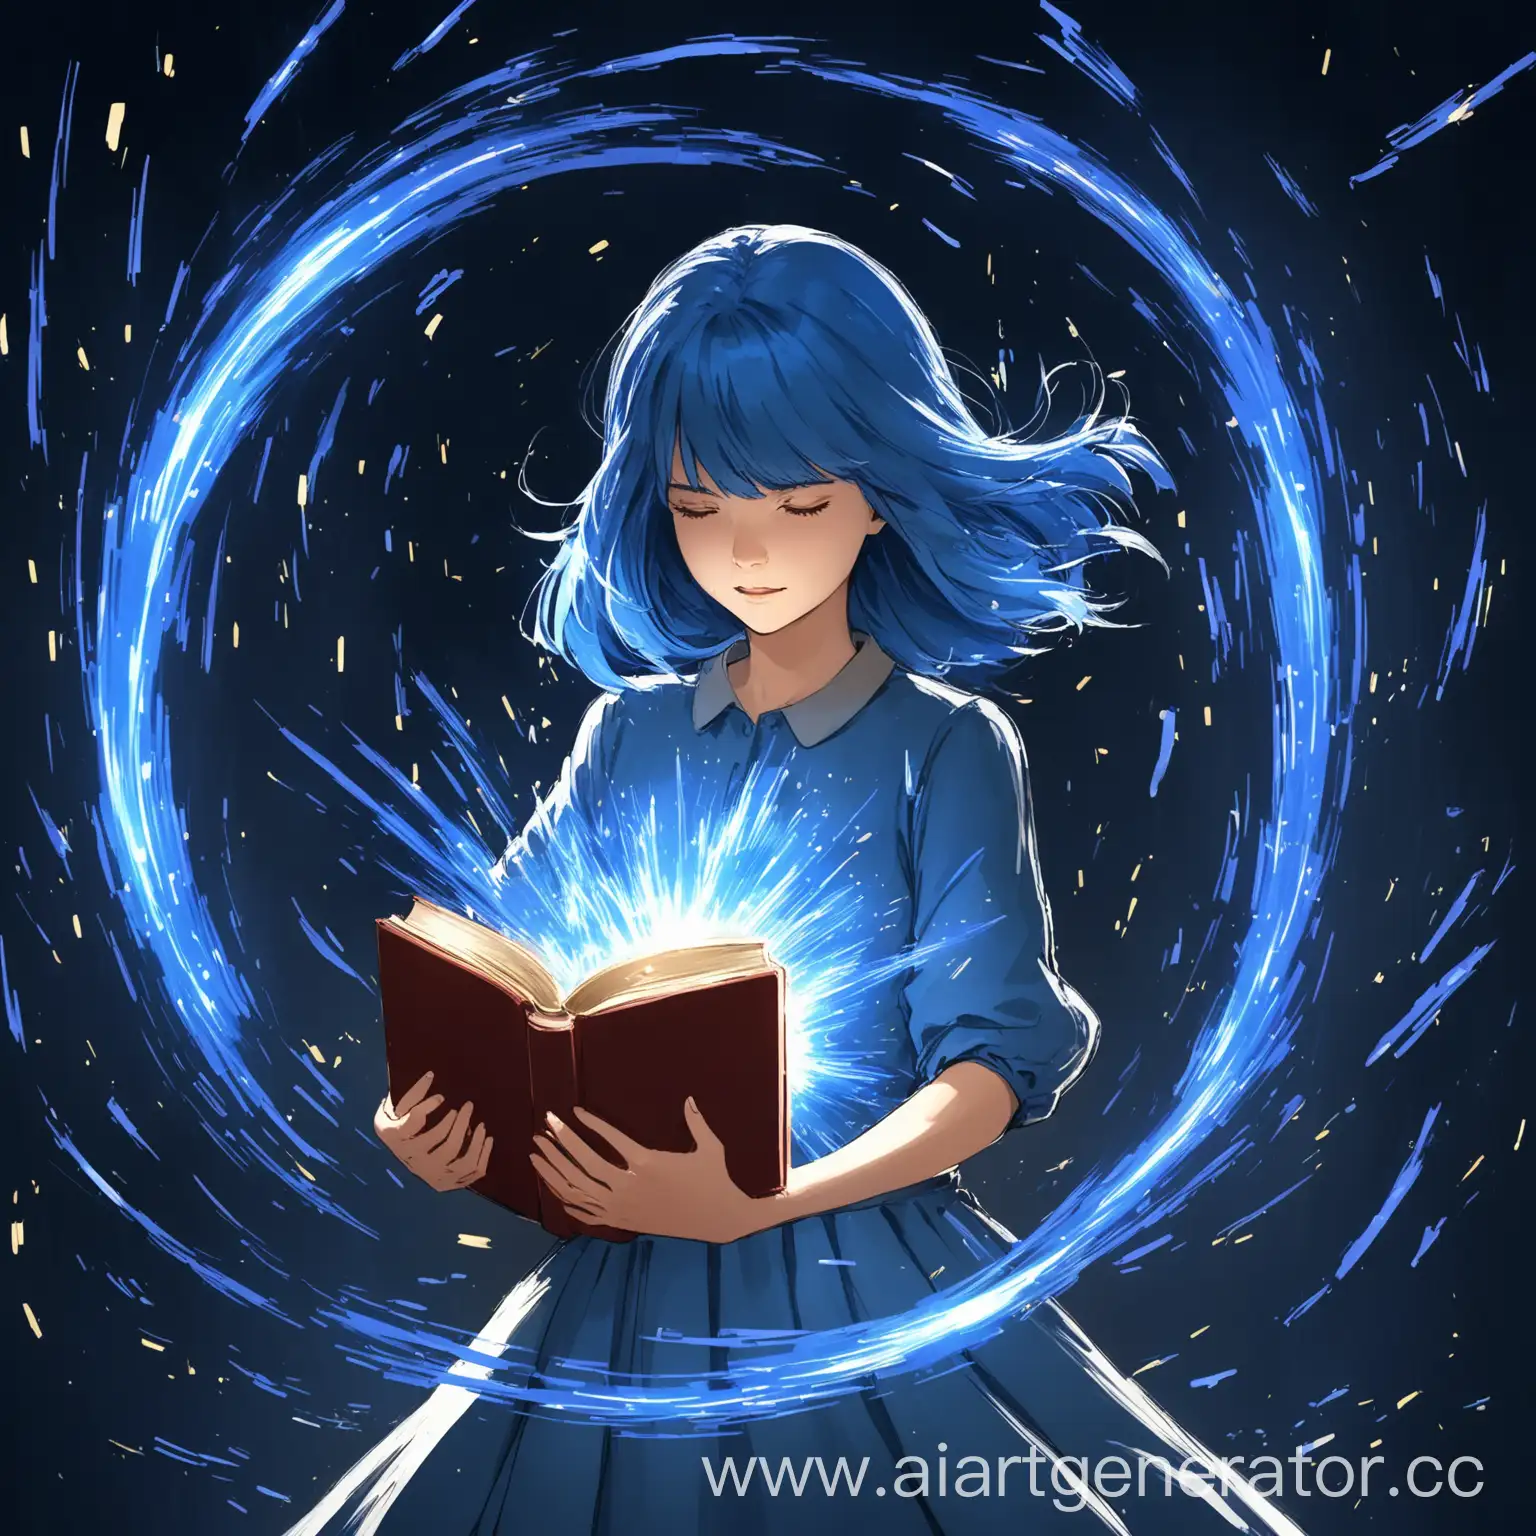 Девушка с синими волосами кружиться и вокруг нее сверкают синие искры, в руках она держит книгу